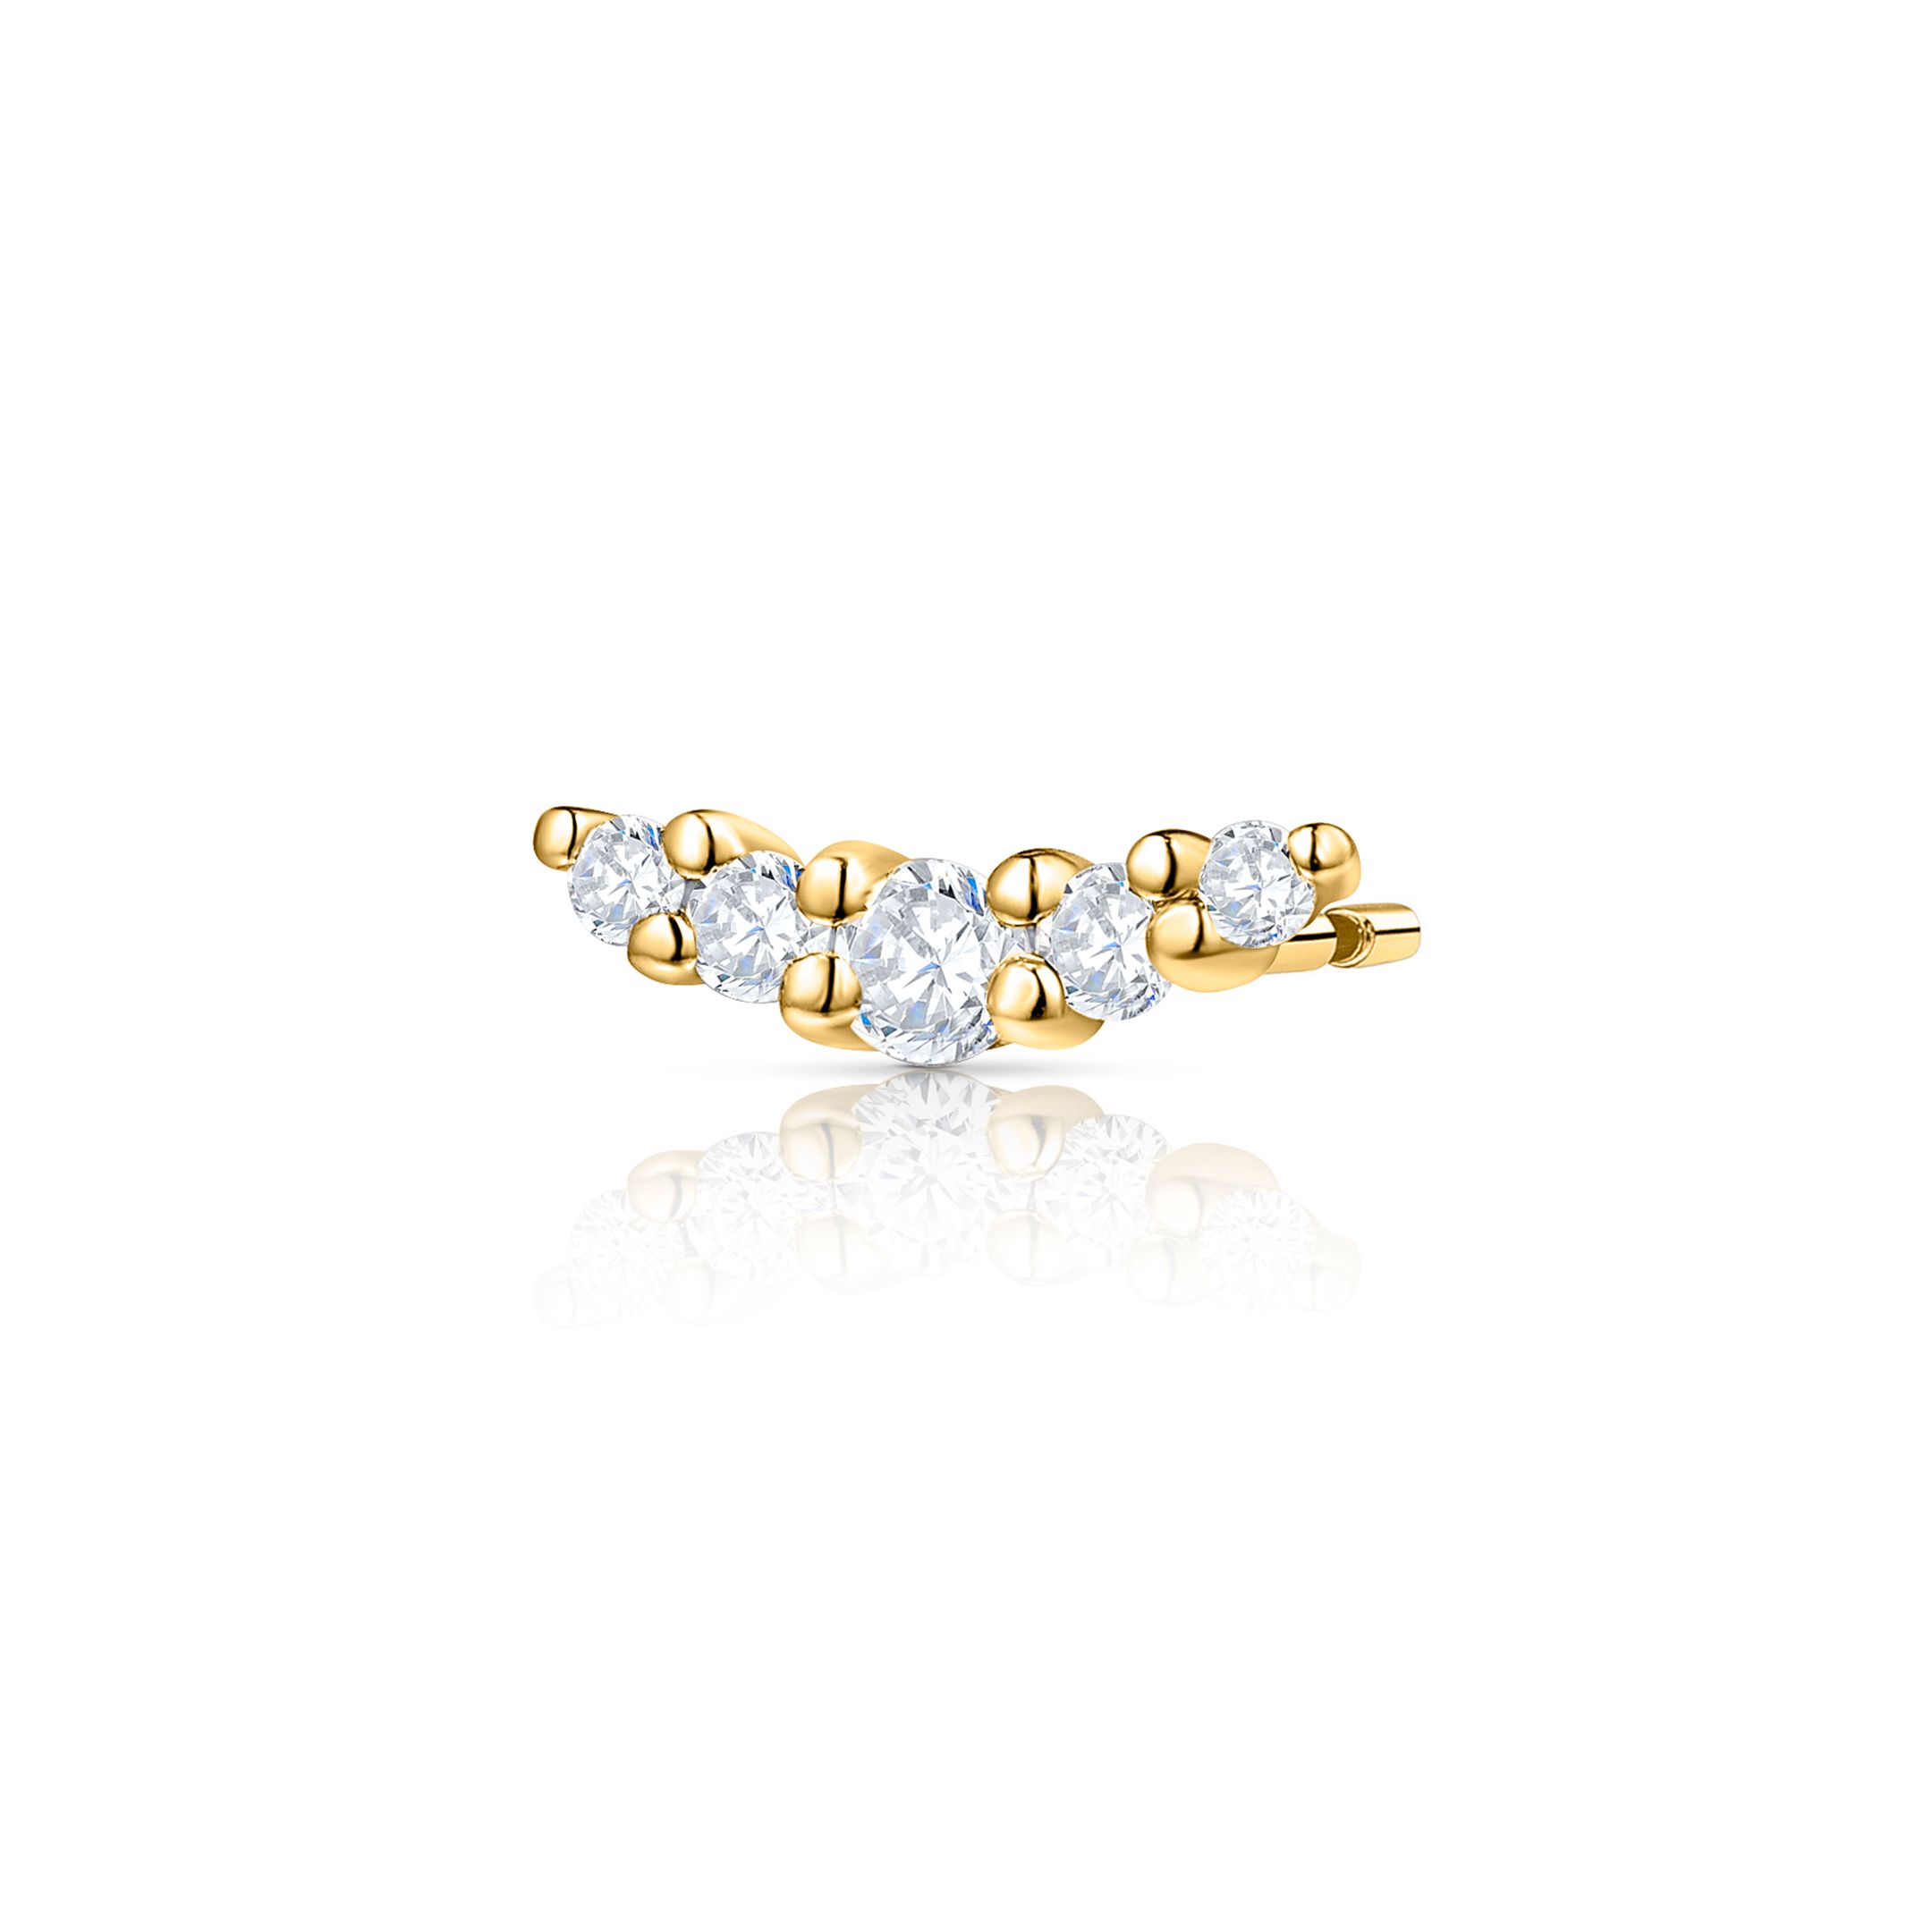 Pendiente Piercing Petite Diamonds Wave en Oro Amarillo de 18 Kt